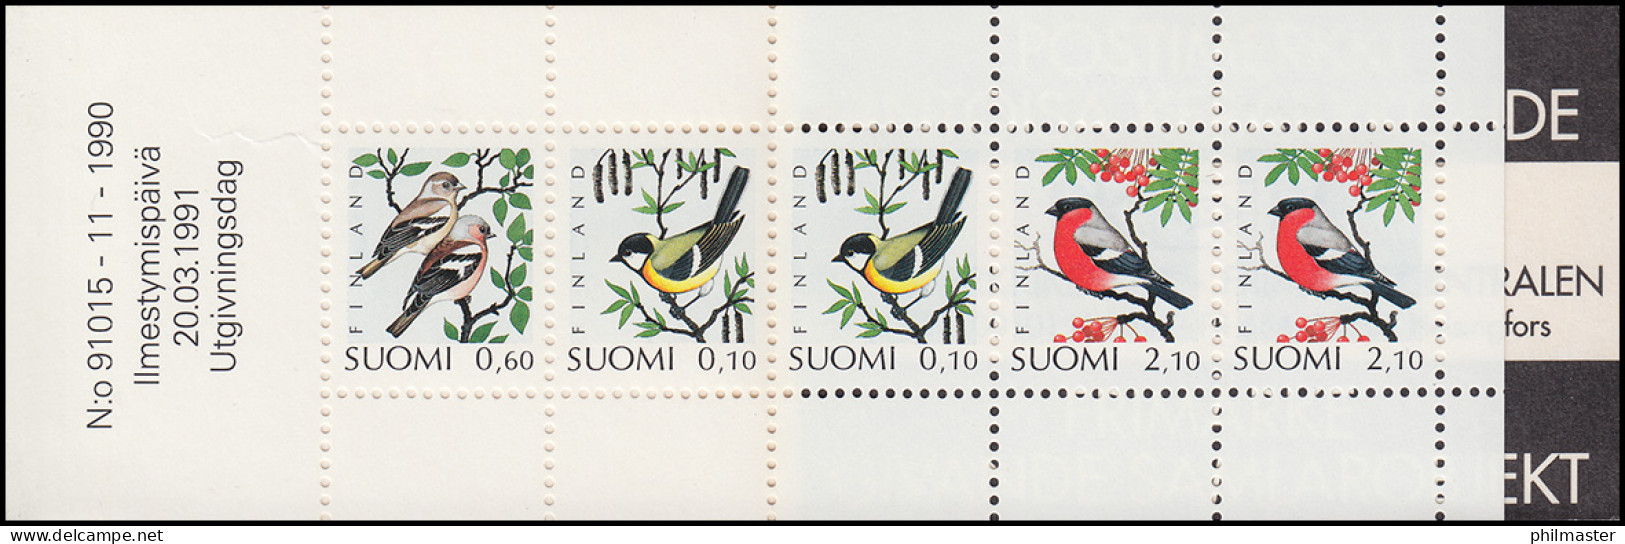 Finnland Markenheftchen 28 Vögel 1991, ** Postfrisch - Markenheftchen